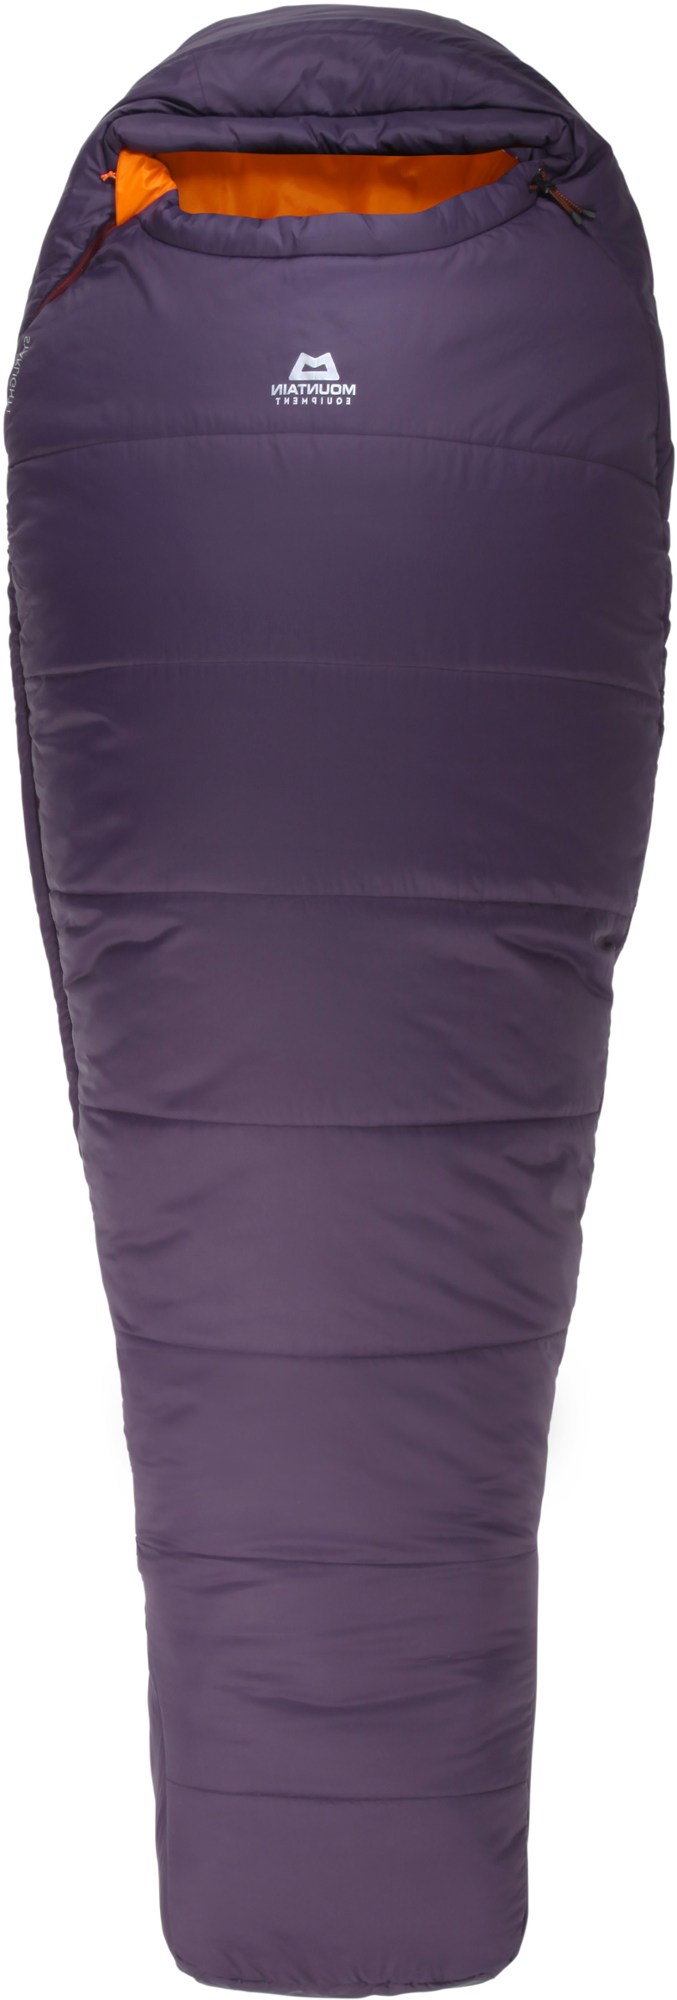 Спальный мешок Starlight I - женский длинный Mountain Equipment, фиолетовый